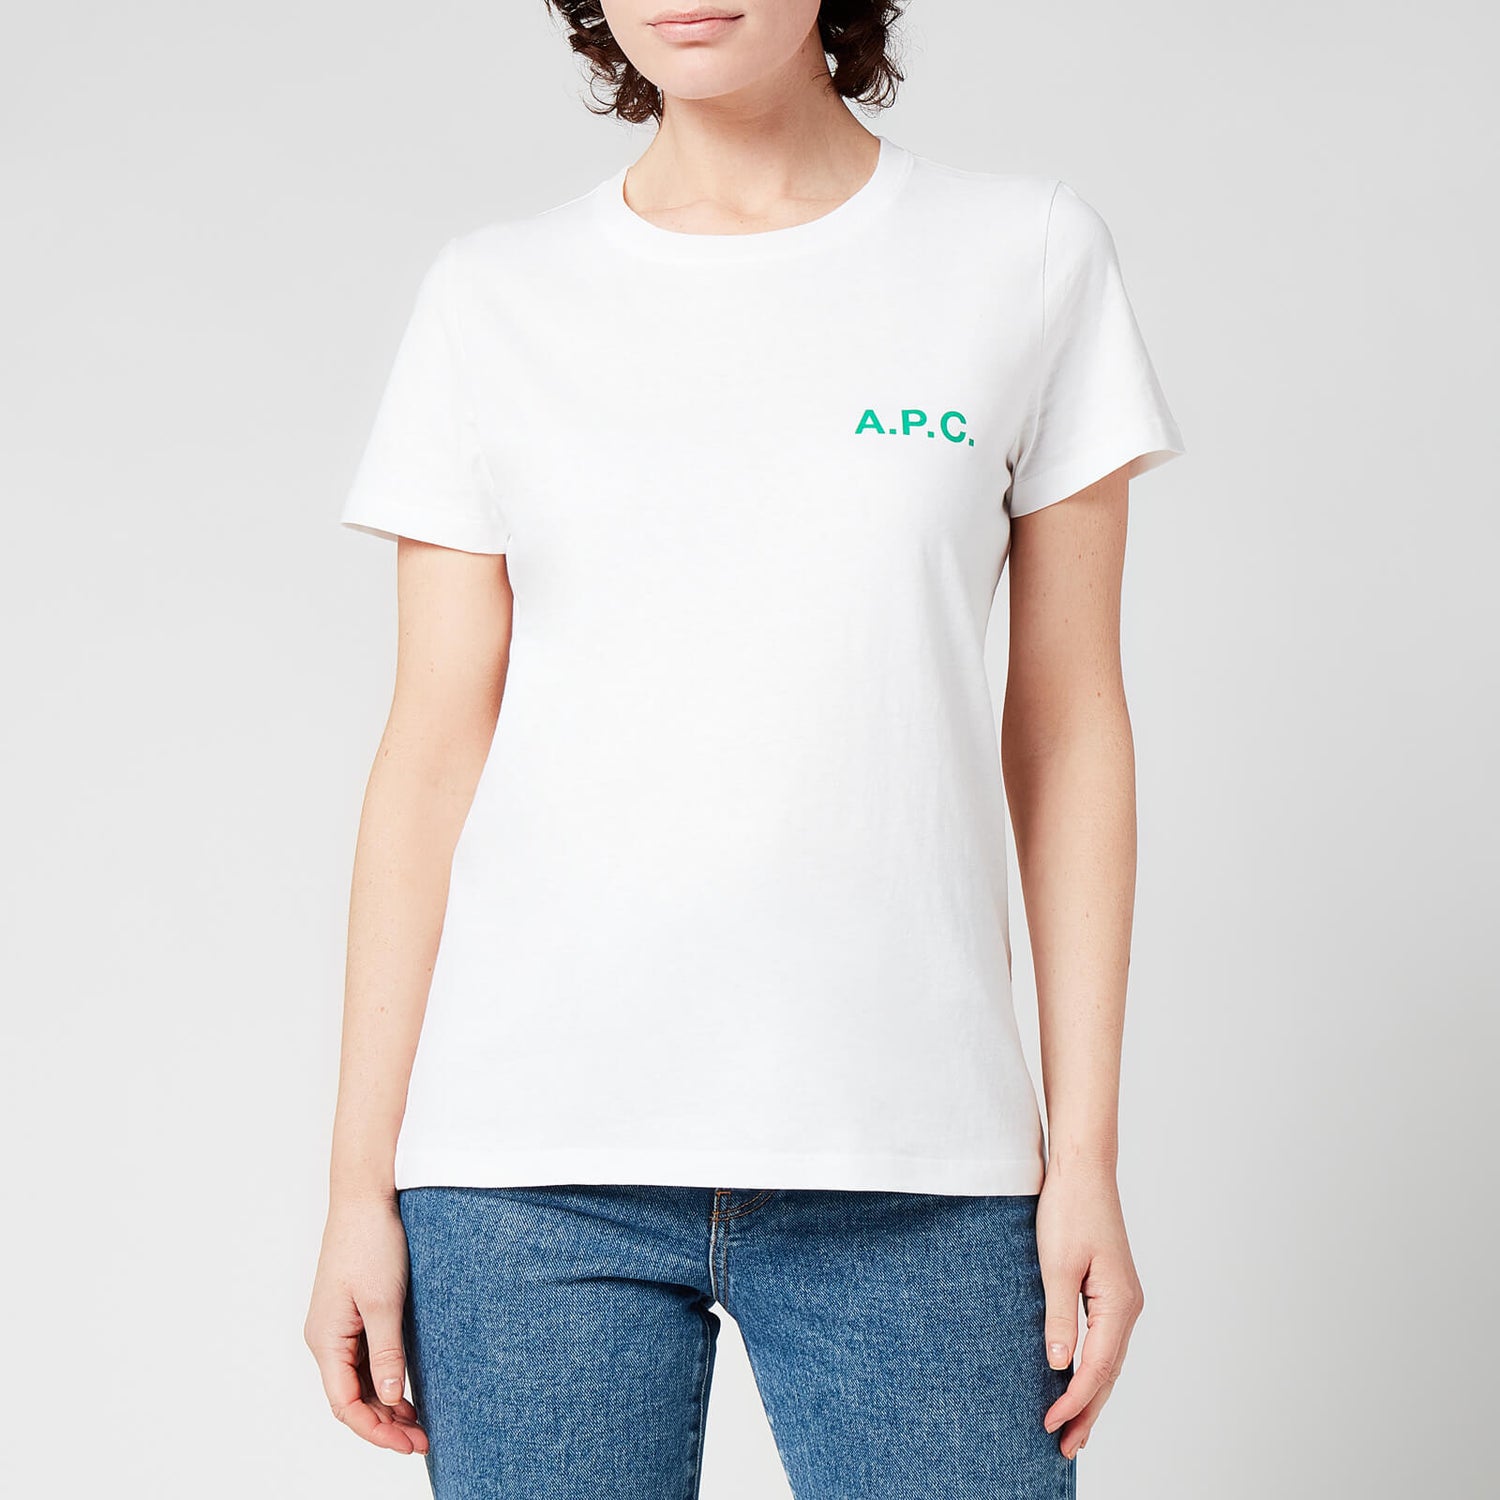 A.P.C. Women's Leanne T-Shirt - White - XS